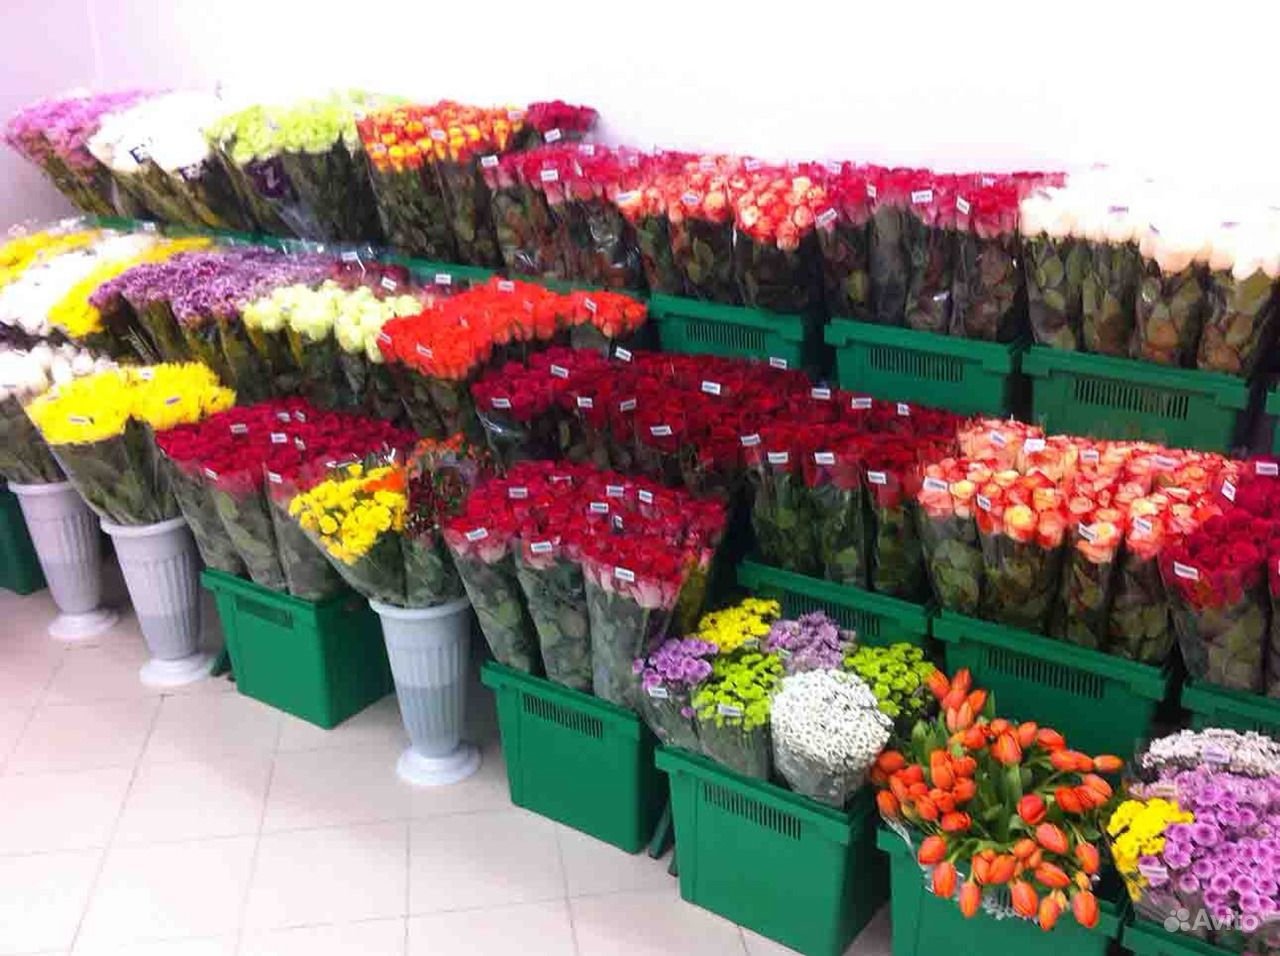 Оптовые дешевые базы цветов. Свежесрезанные цветы. Торговля цветами. Склад цветов. Оптовый магазин цветов.